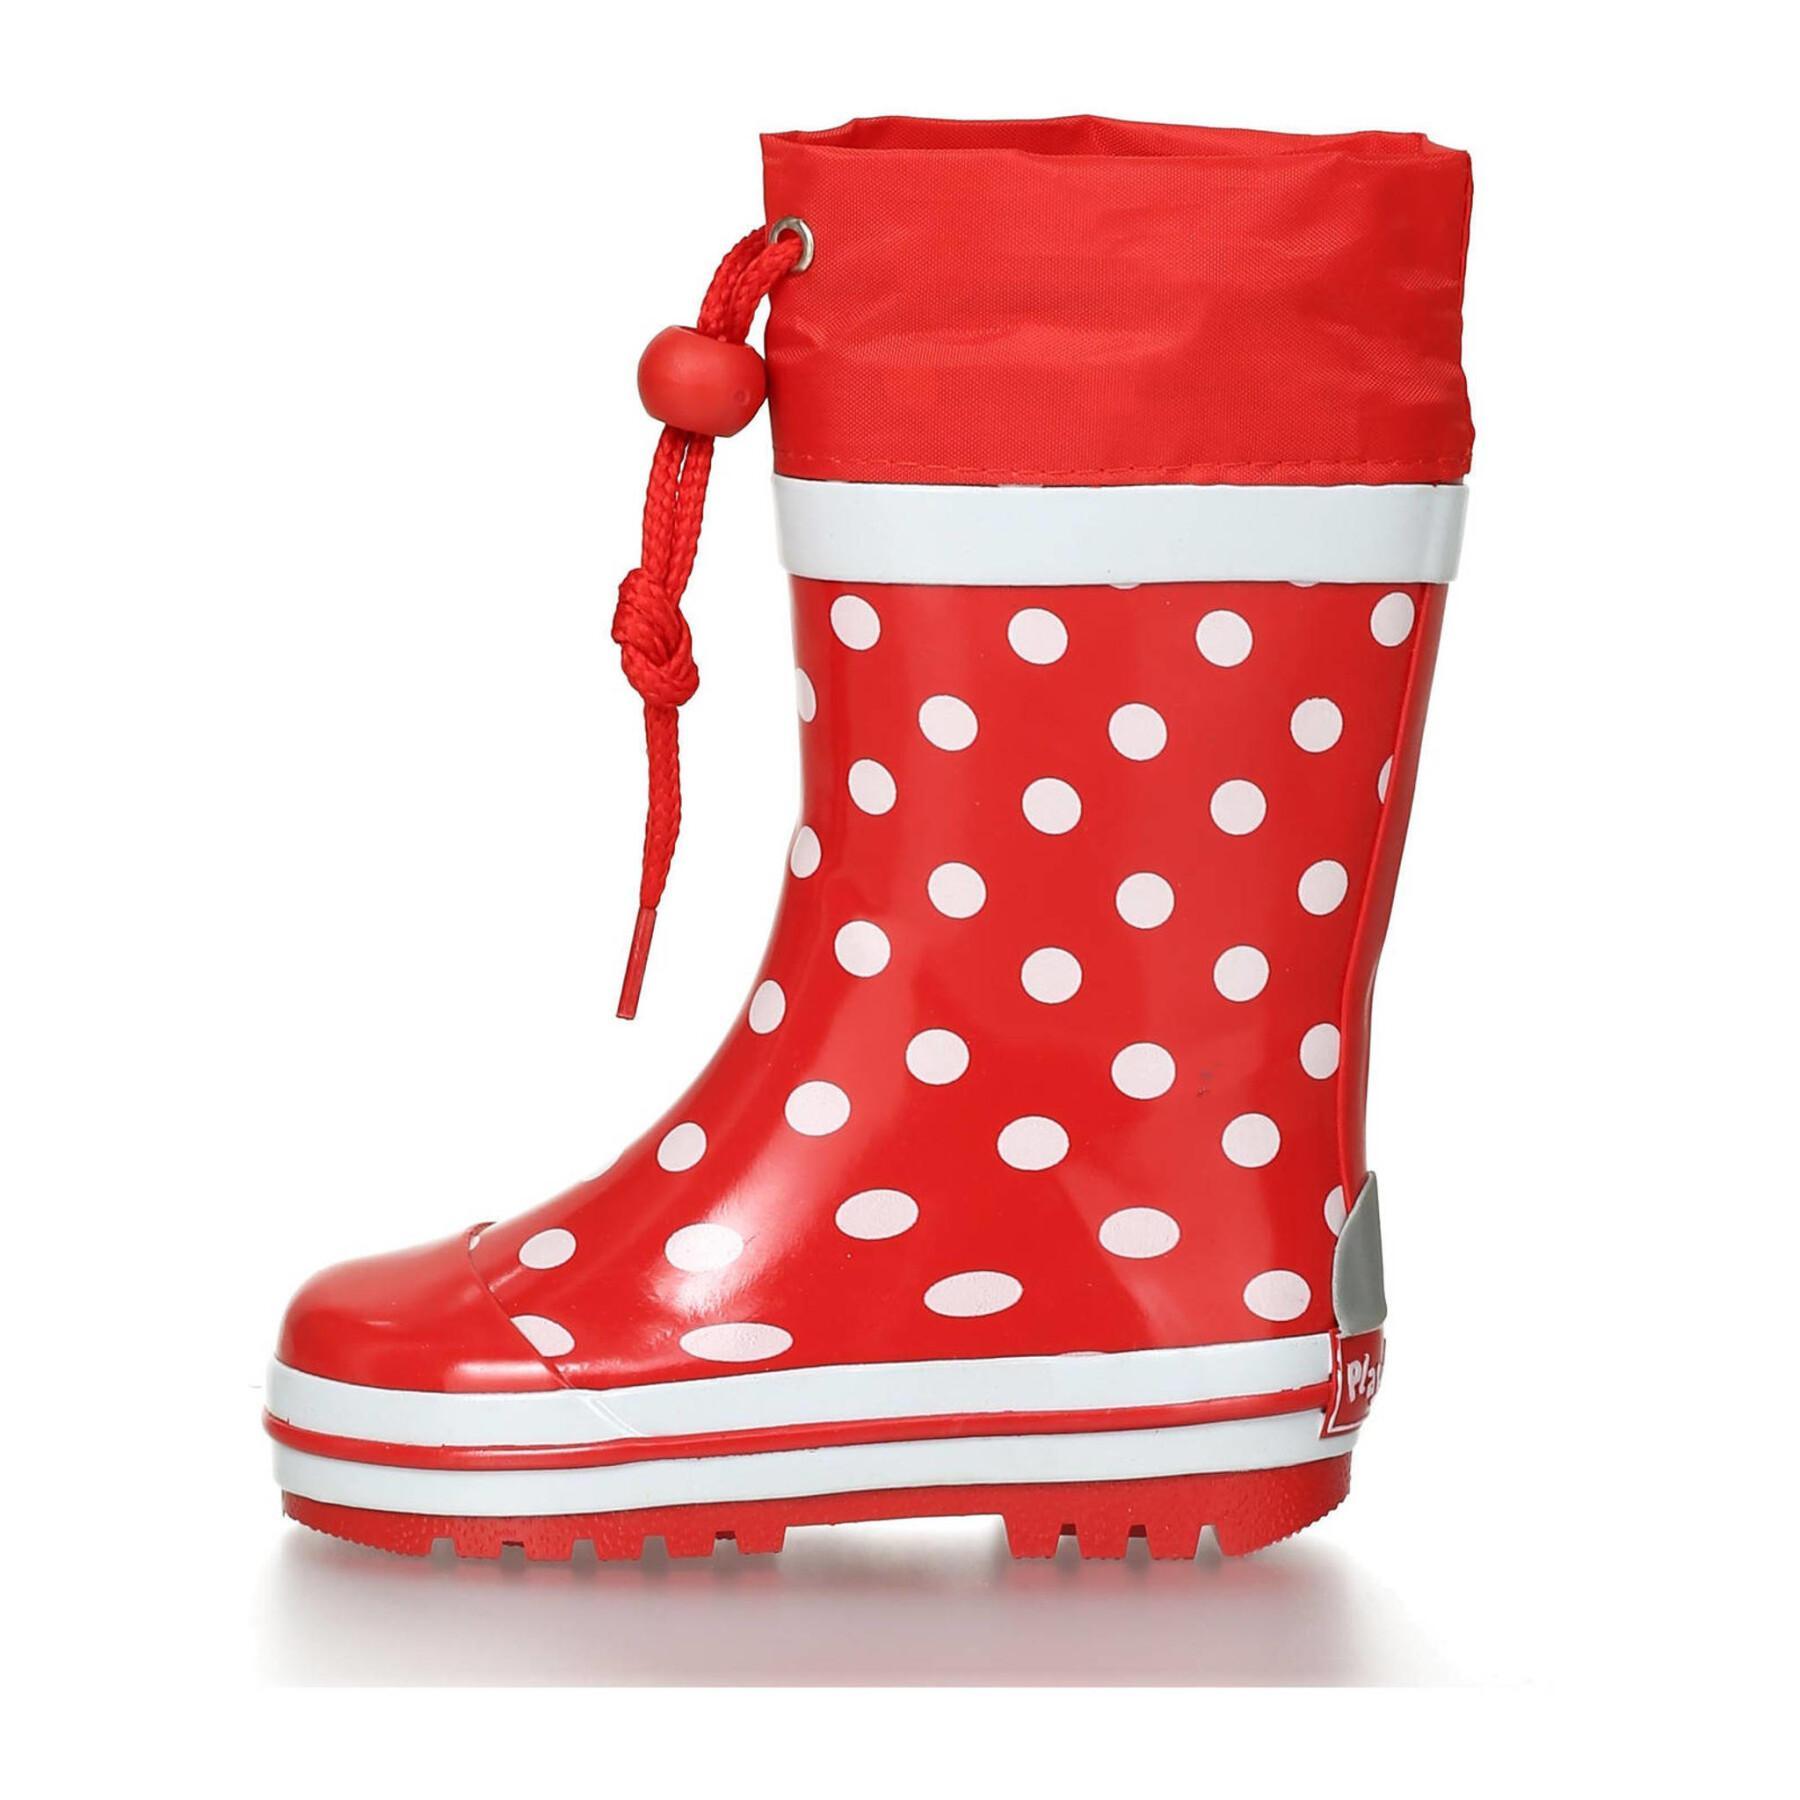 Children's rubber rain boots Playshoes Dots